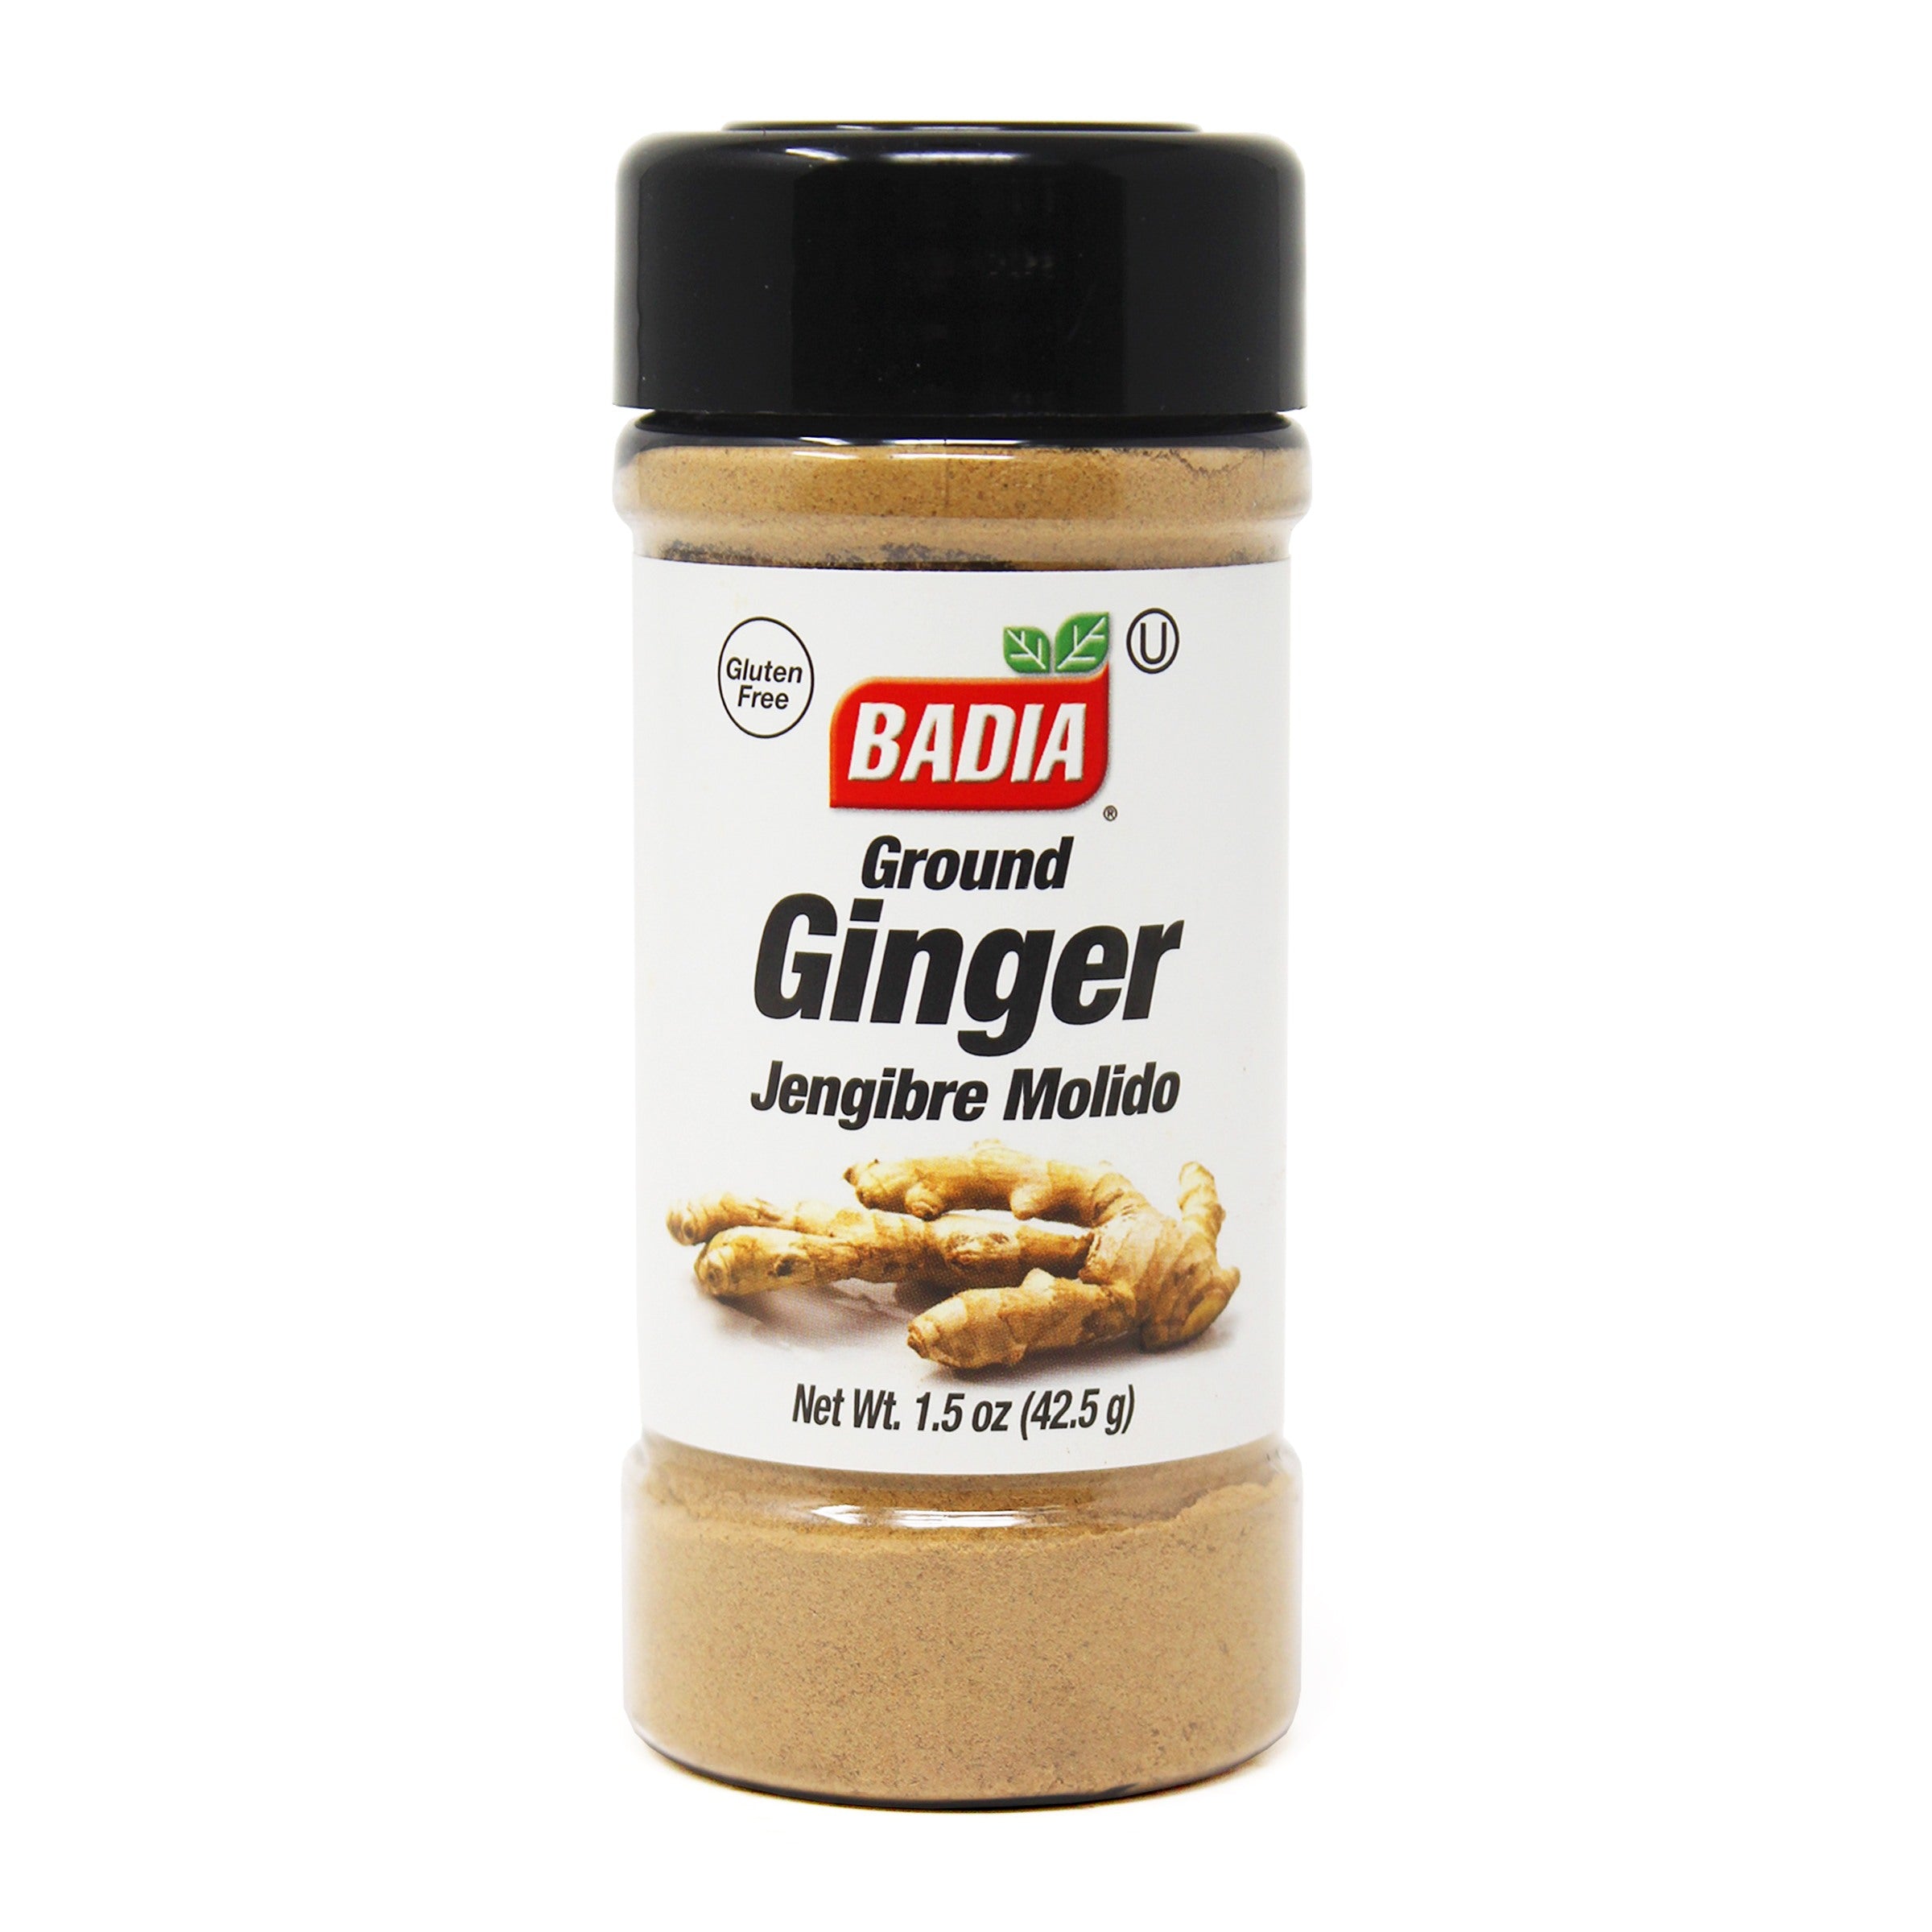 Badia Ginger ground 1.5 oz